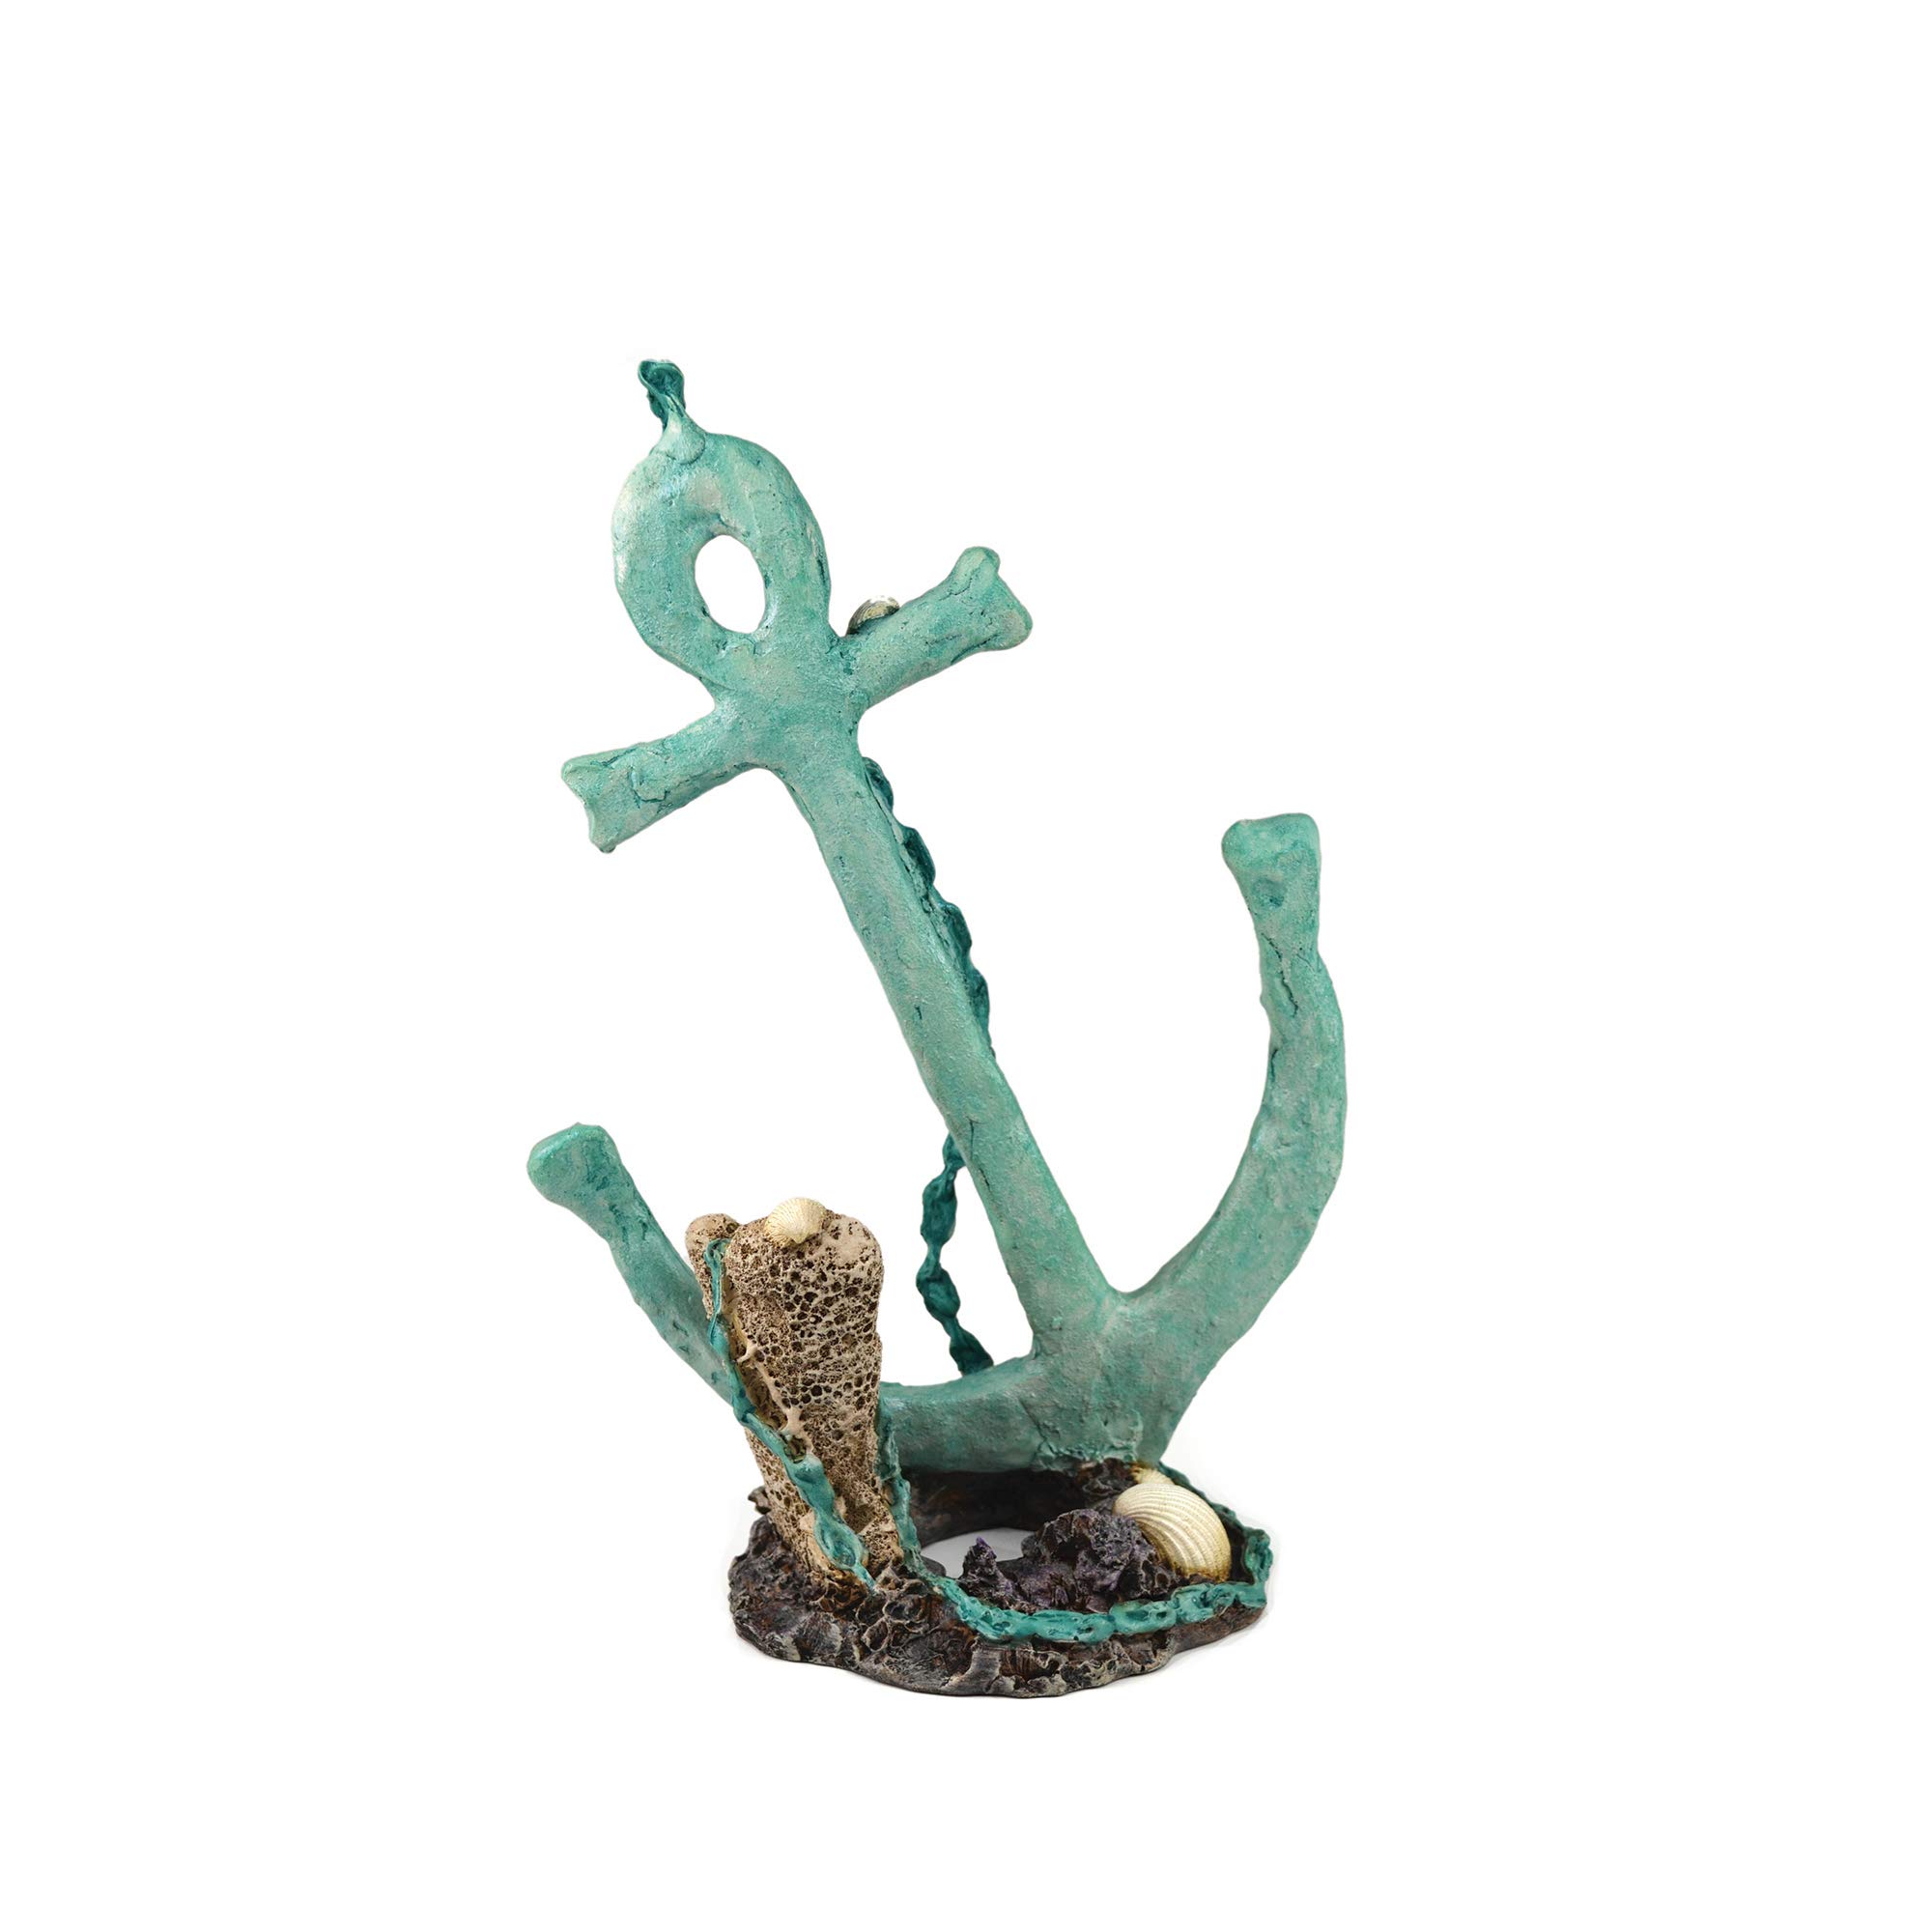 biOrb 46139 Anker Ornament – detaillierte Aquariendekoration in grün/ türkis mit Muschel und Korallen auf einem Felsen | zur maritimen Einrichtung von Süßwasseraquarien und Meerwasseraquarien